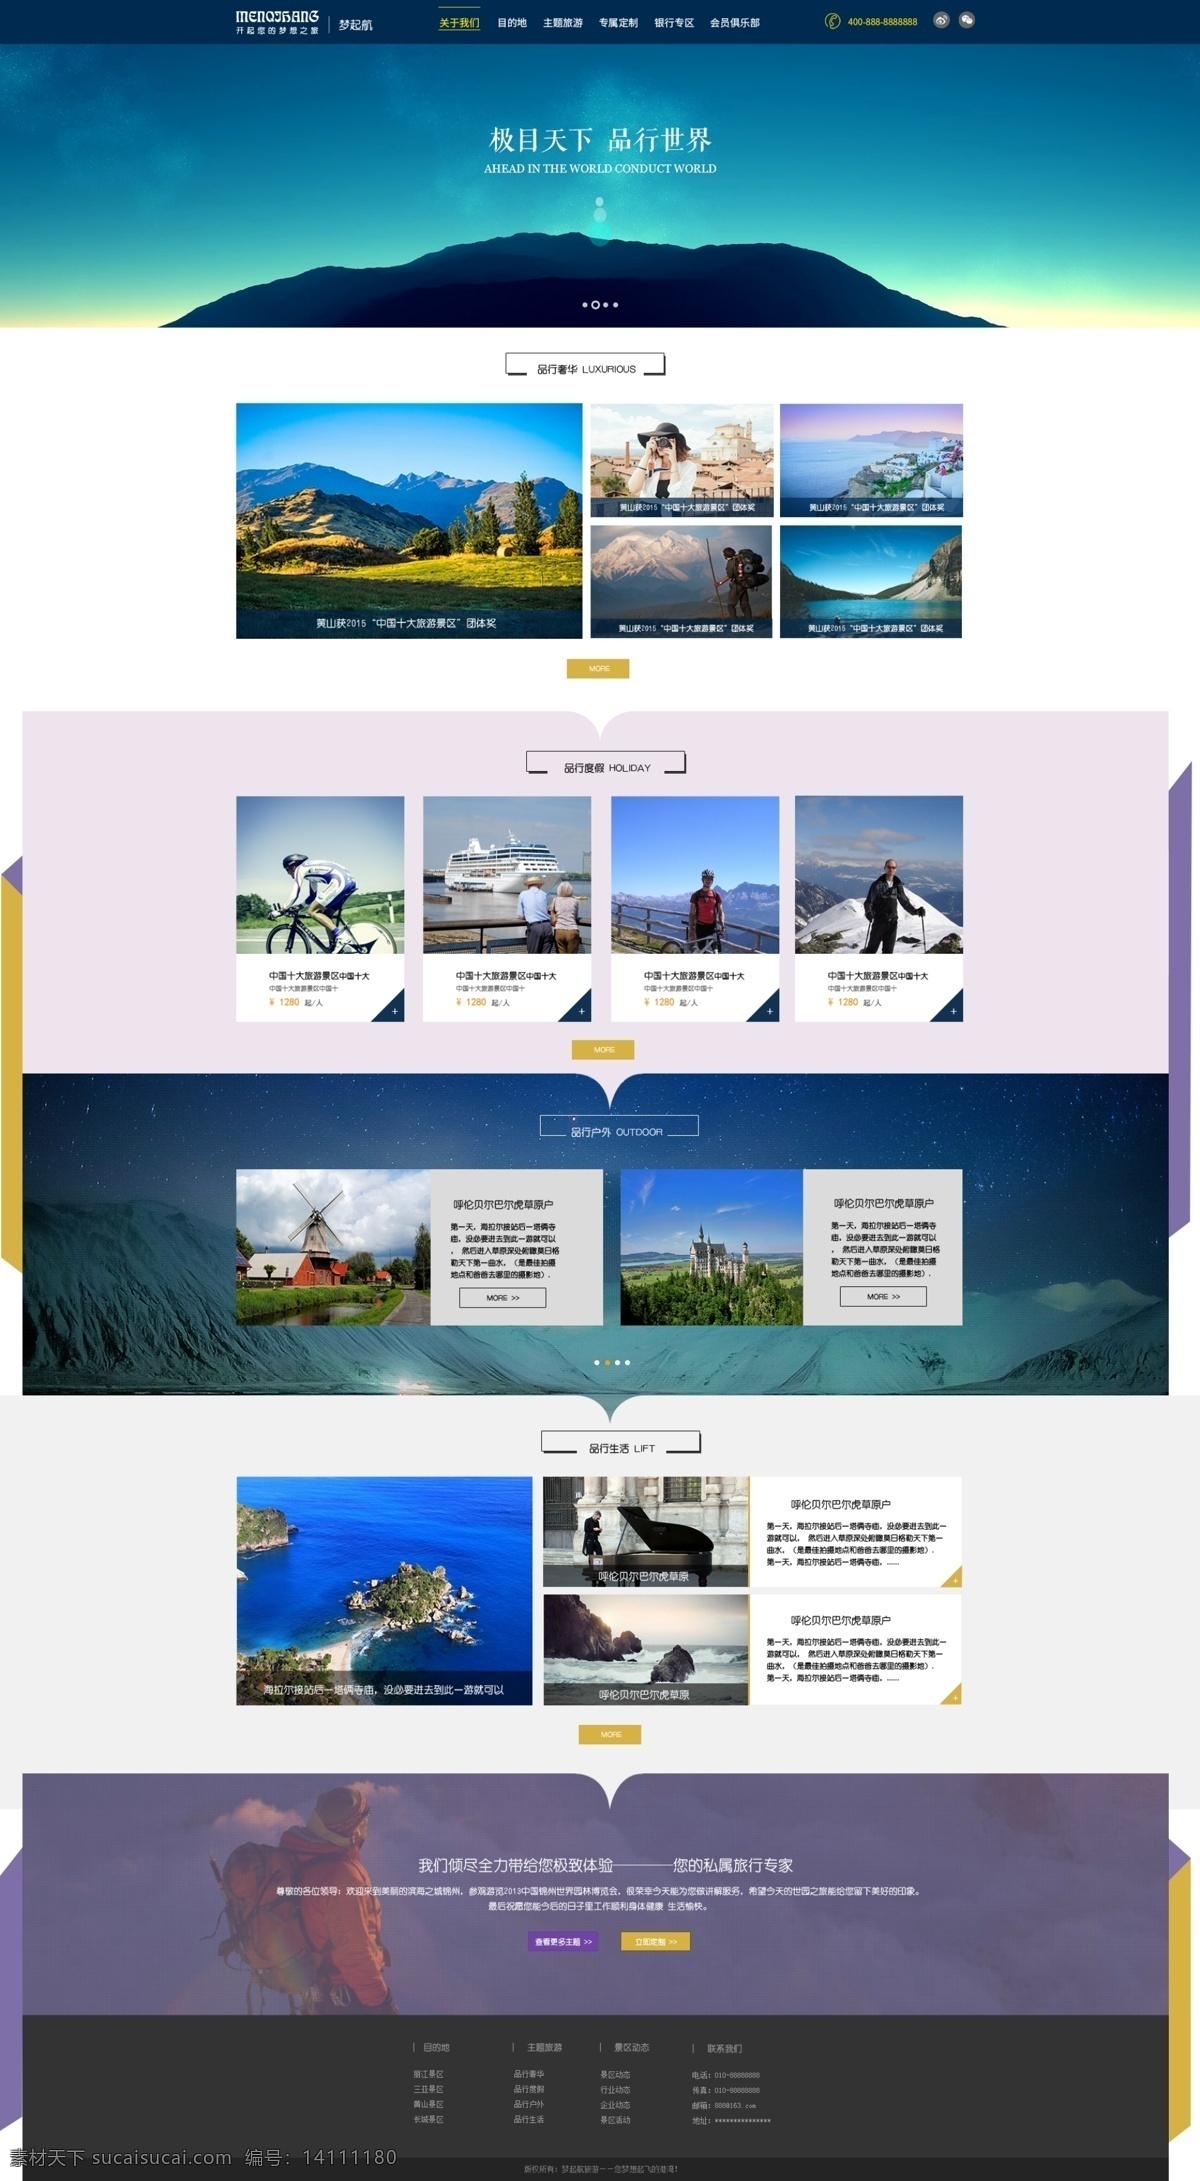 旅游 网页模板 分层 网页设计 网页排版 旅游网页 蓝色网站 旅游公司 自然风景 极目天下 品行世界